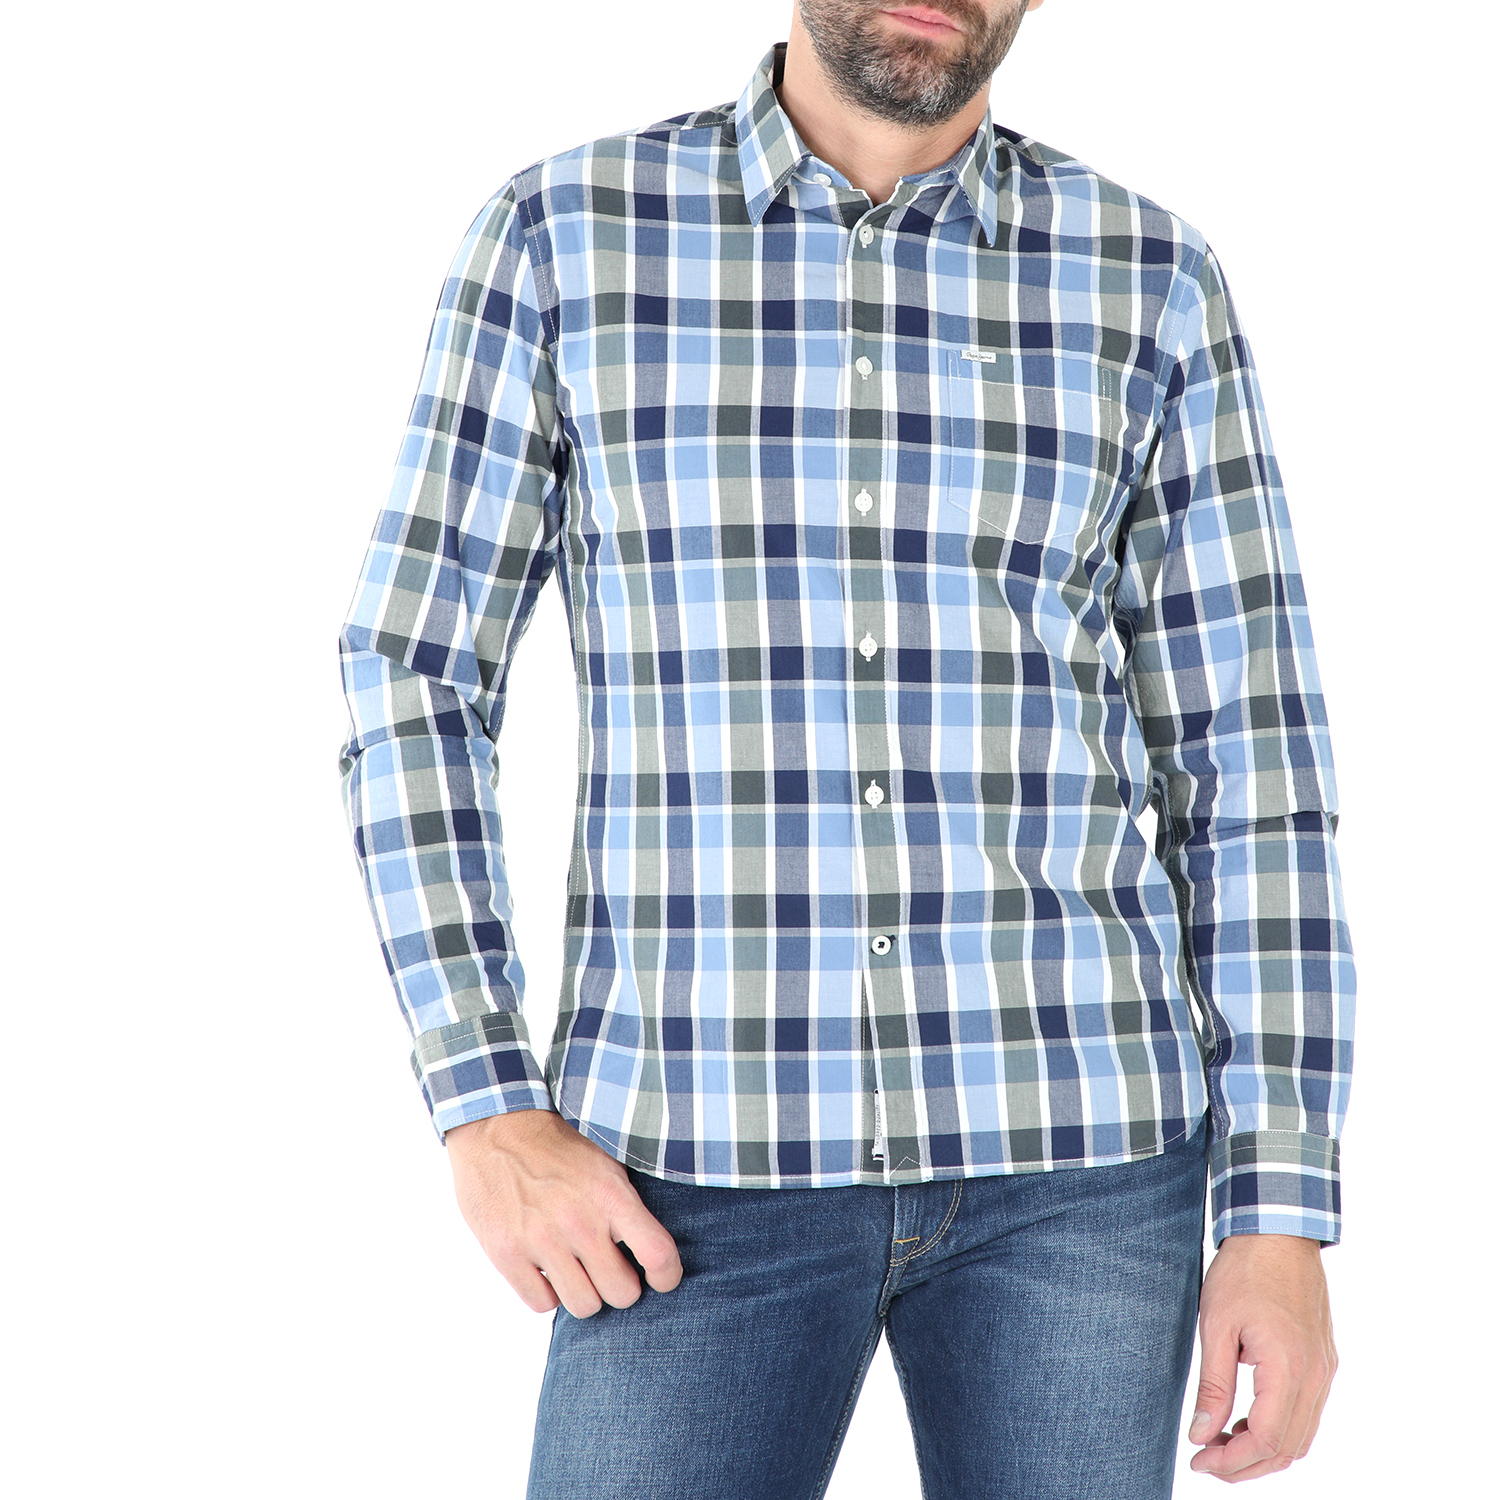 Ανδρικά/Ρούχα/Πουκάμισα/Μακρυμάνικα PEPE JEANS - Ανδρικό μακρυμάνικο πουκάμισο PEPE JEANS HARRY μπλέ-καρό